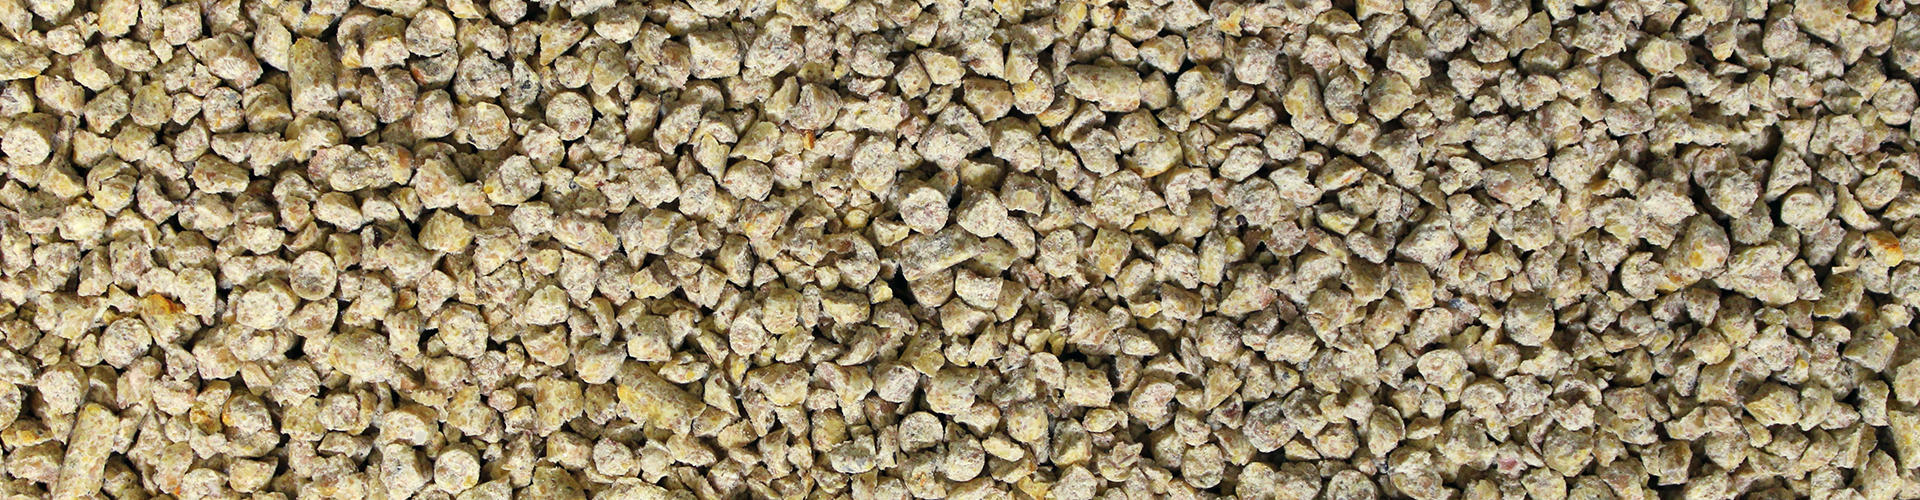 Quik Grow Broiler Crumbles feed closeup image